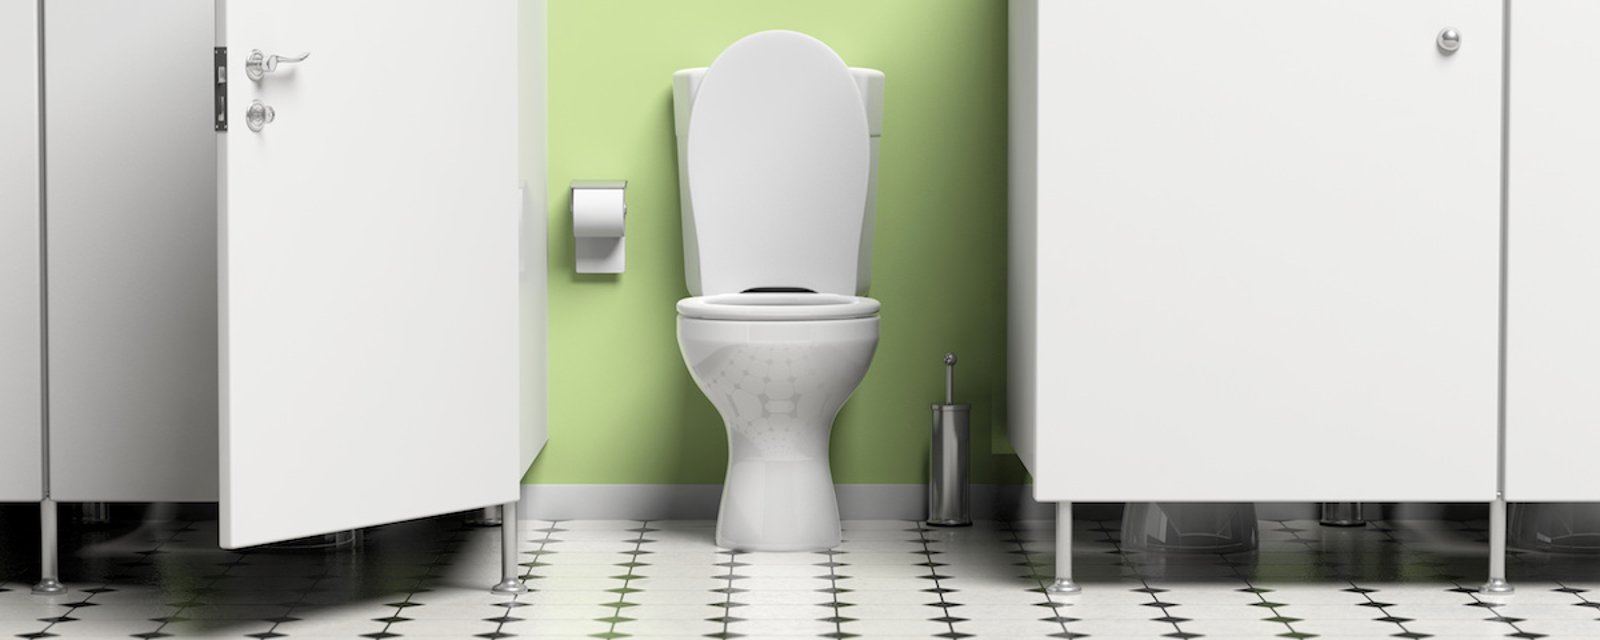 Savez-vous pourquoi les portes des toilettes publiques ne vont pas jusqu'au sol? 